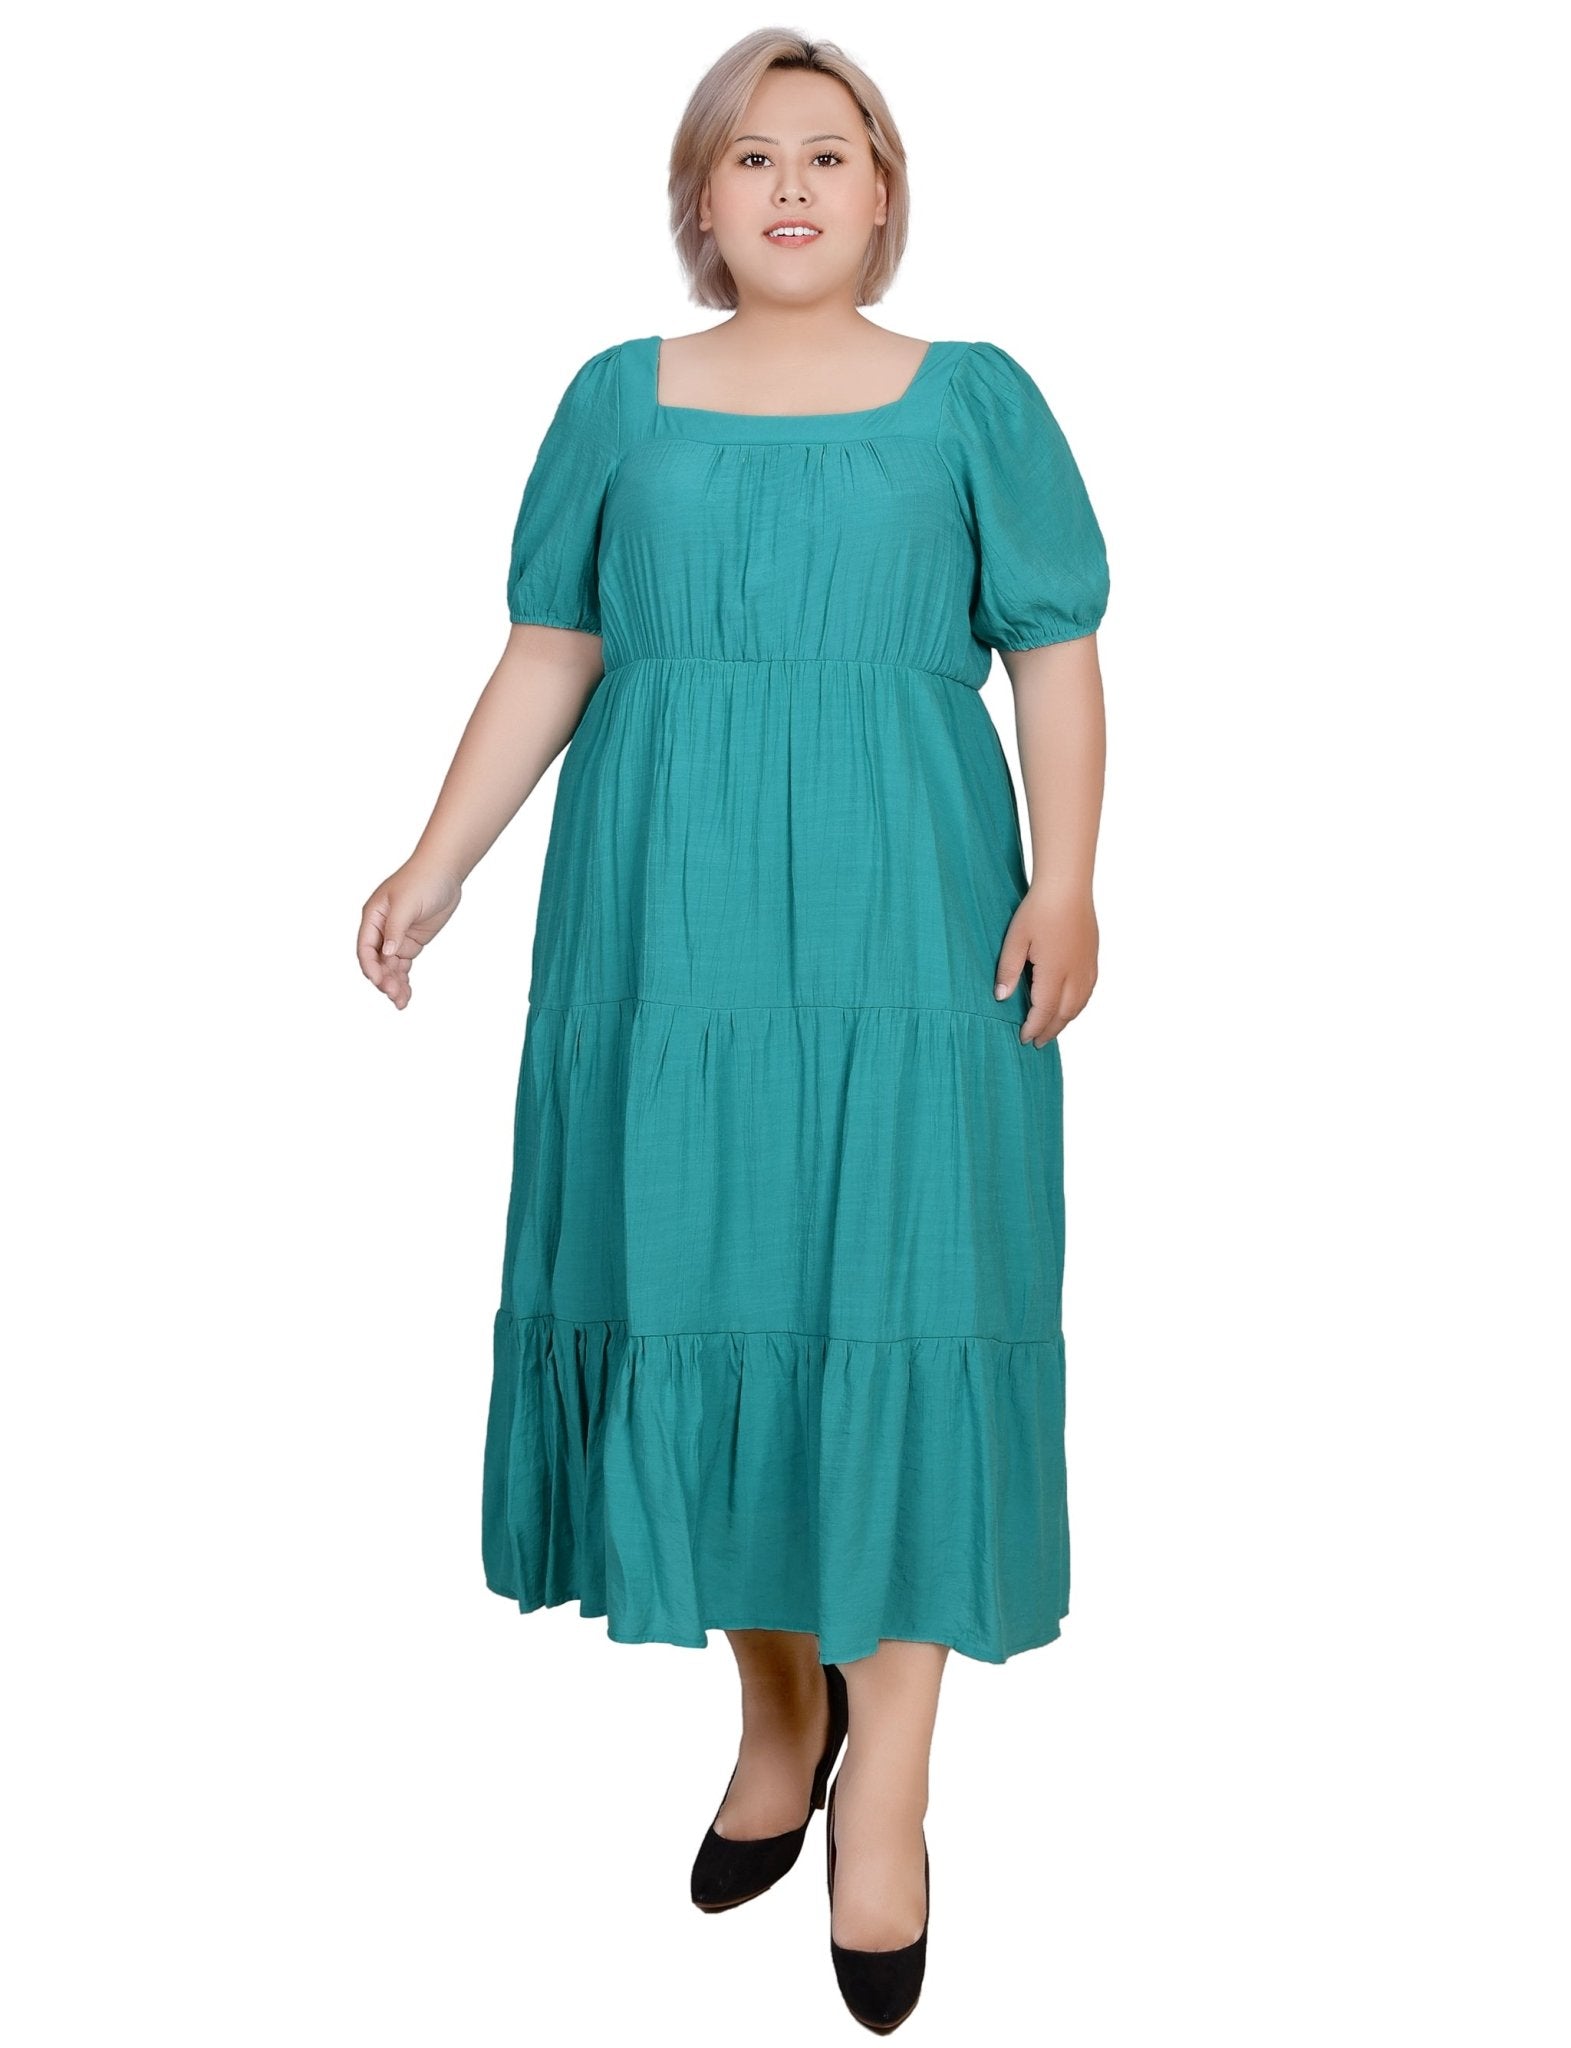 Women's Dresses: Casual & Formal Dresses for Women – Dressbarn